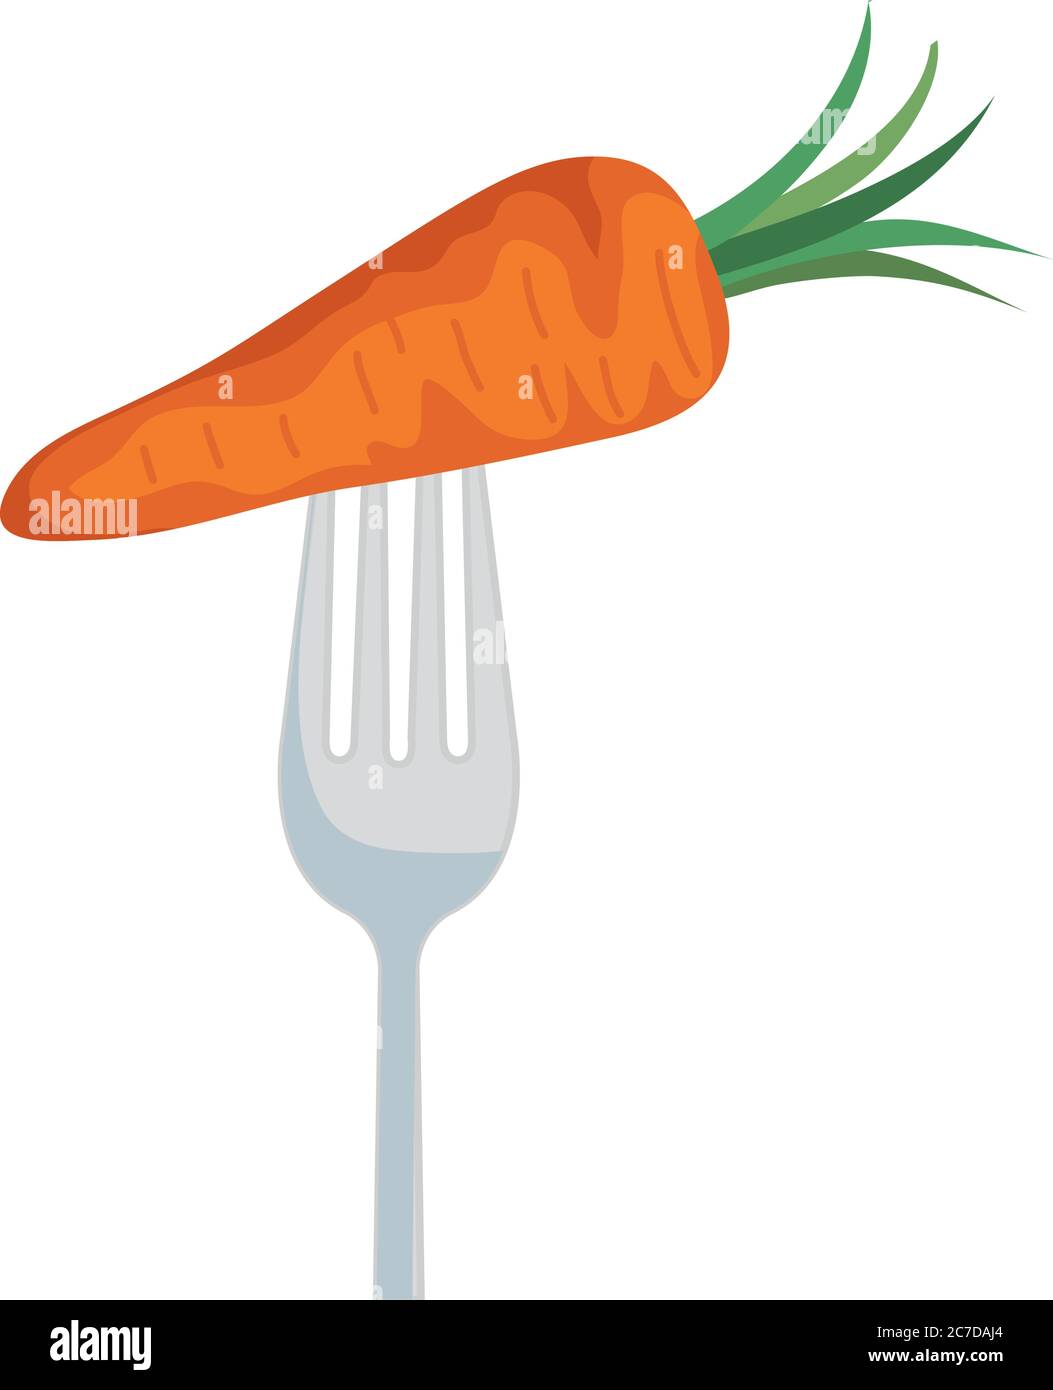 carrot on fork vector design Stock Vector Image & Art - Alamy